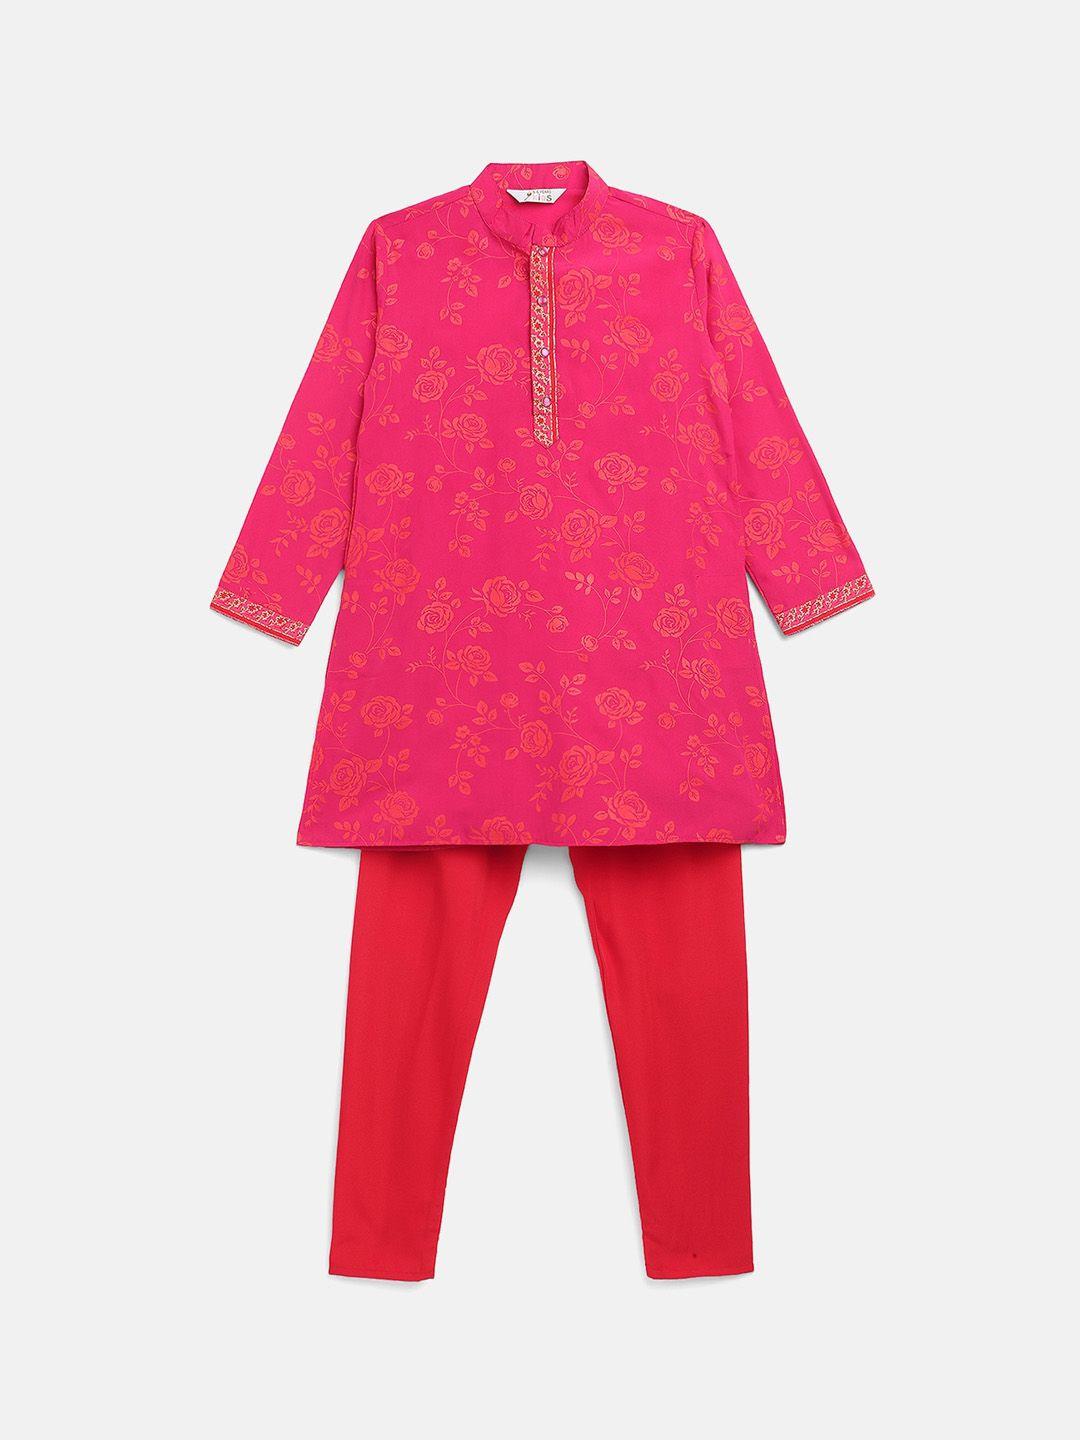 ahalyaa-boys-pink-floral-printed-kurta-with-pyjamas